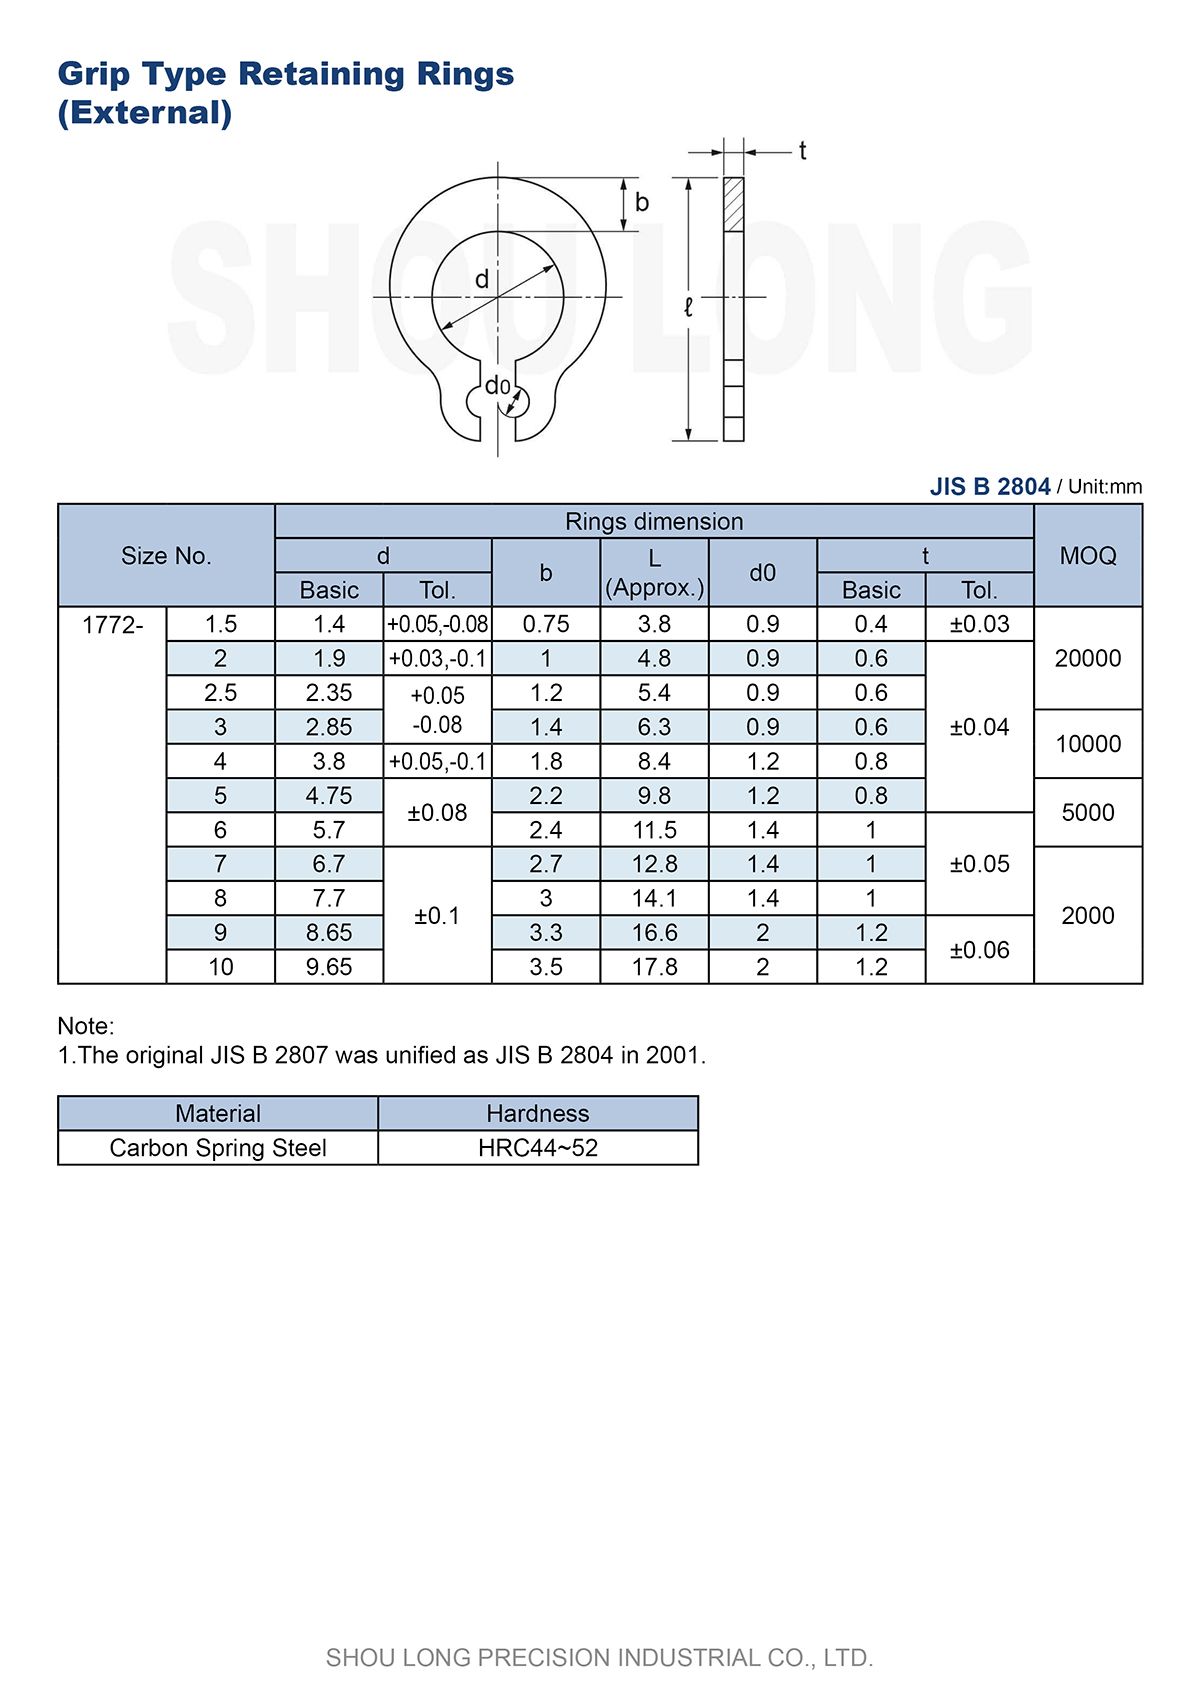 Spesifikasi Cincin Penahan Tipe Grip Metrik JIS untuk Poros B2804